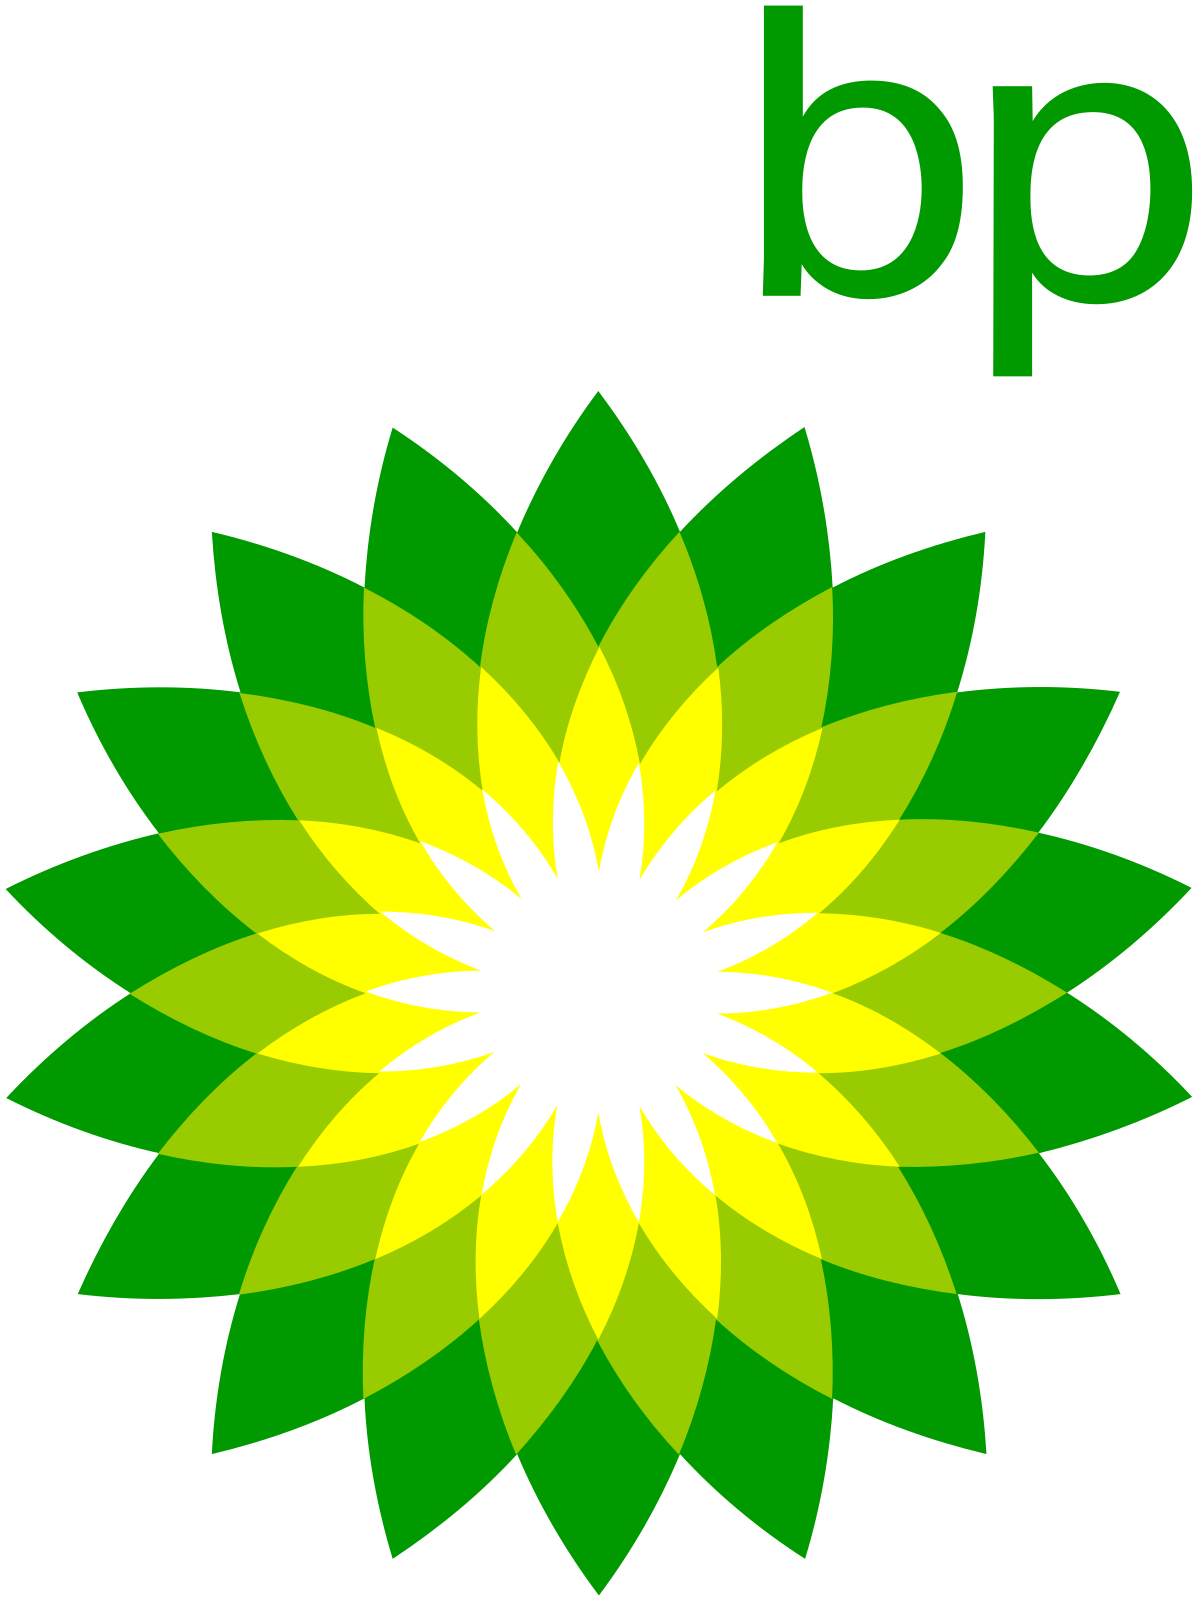 British Petroleum Logo - BP